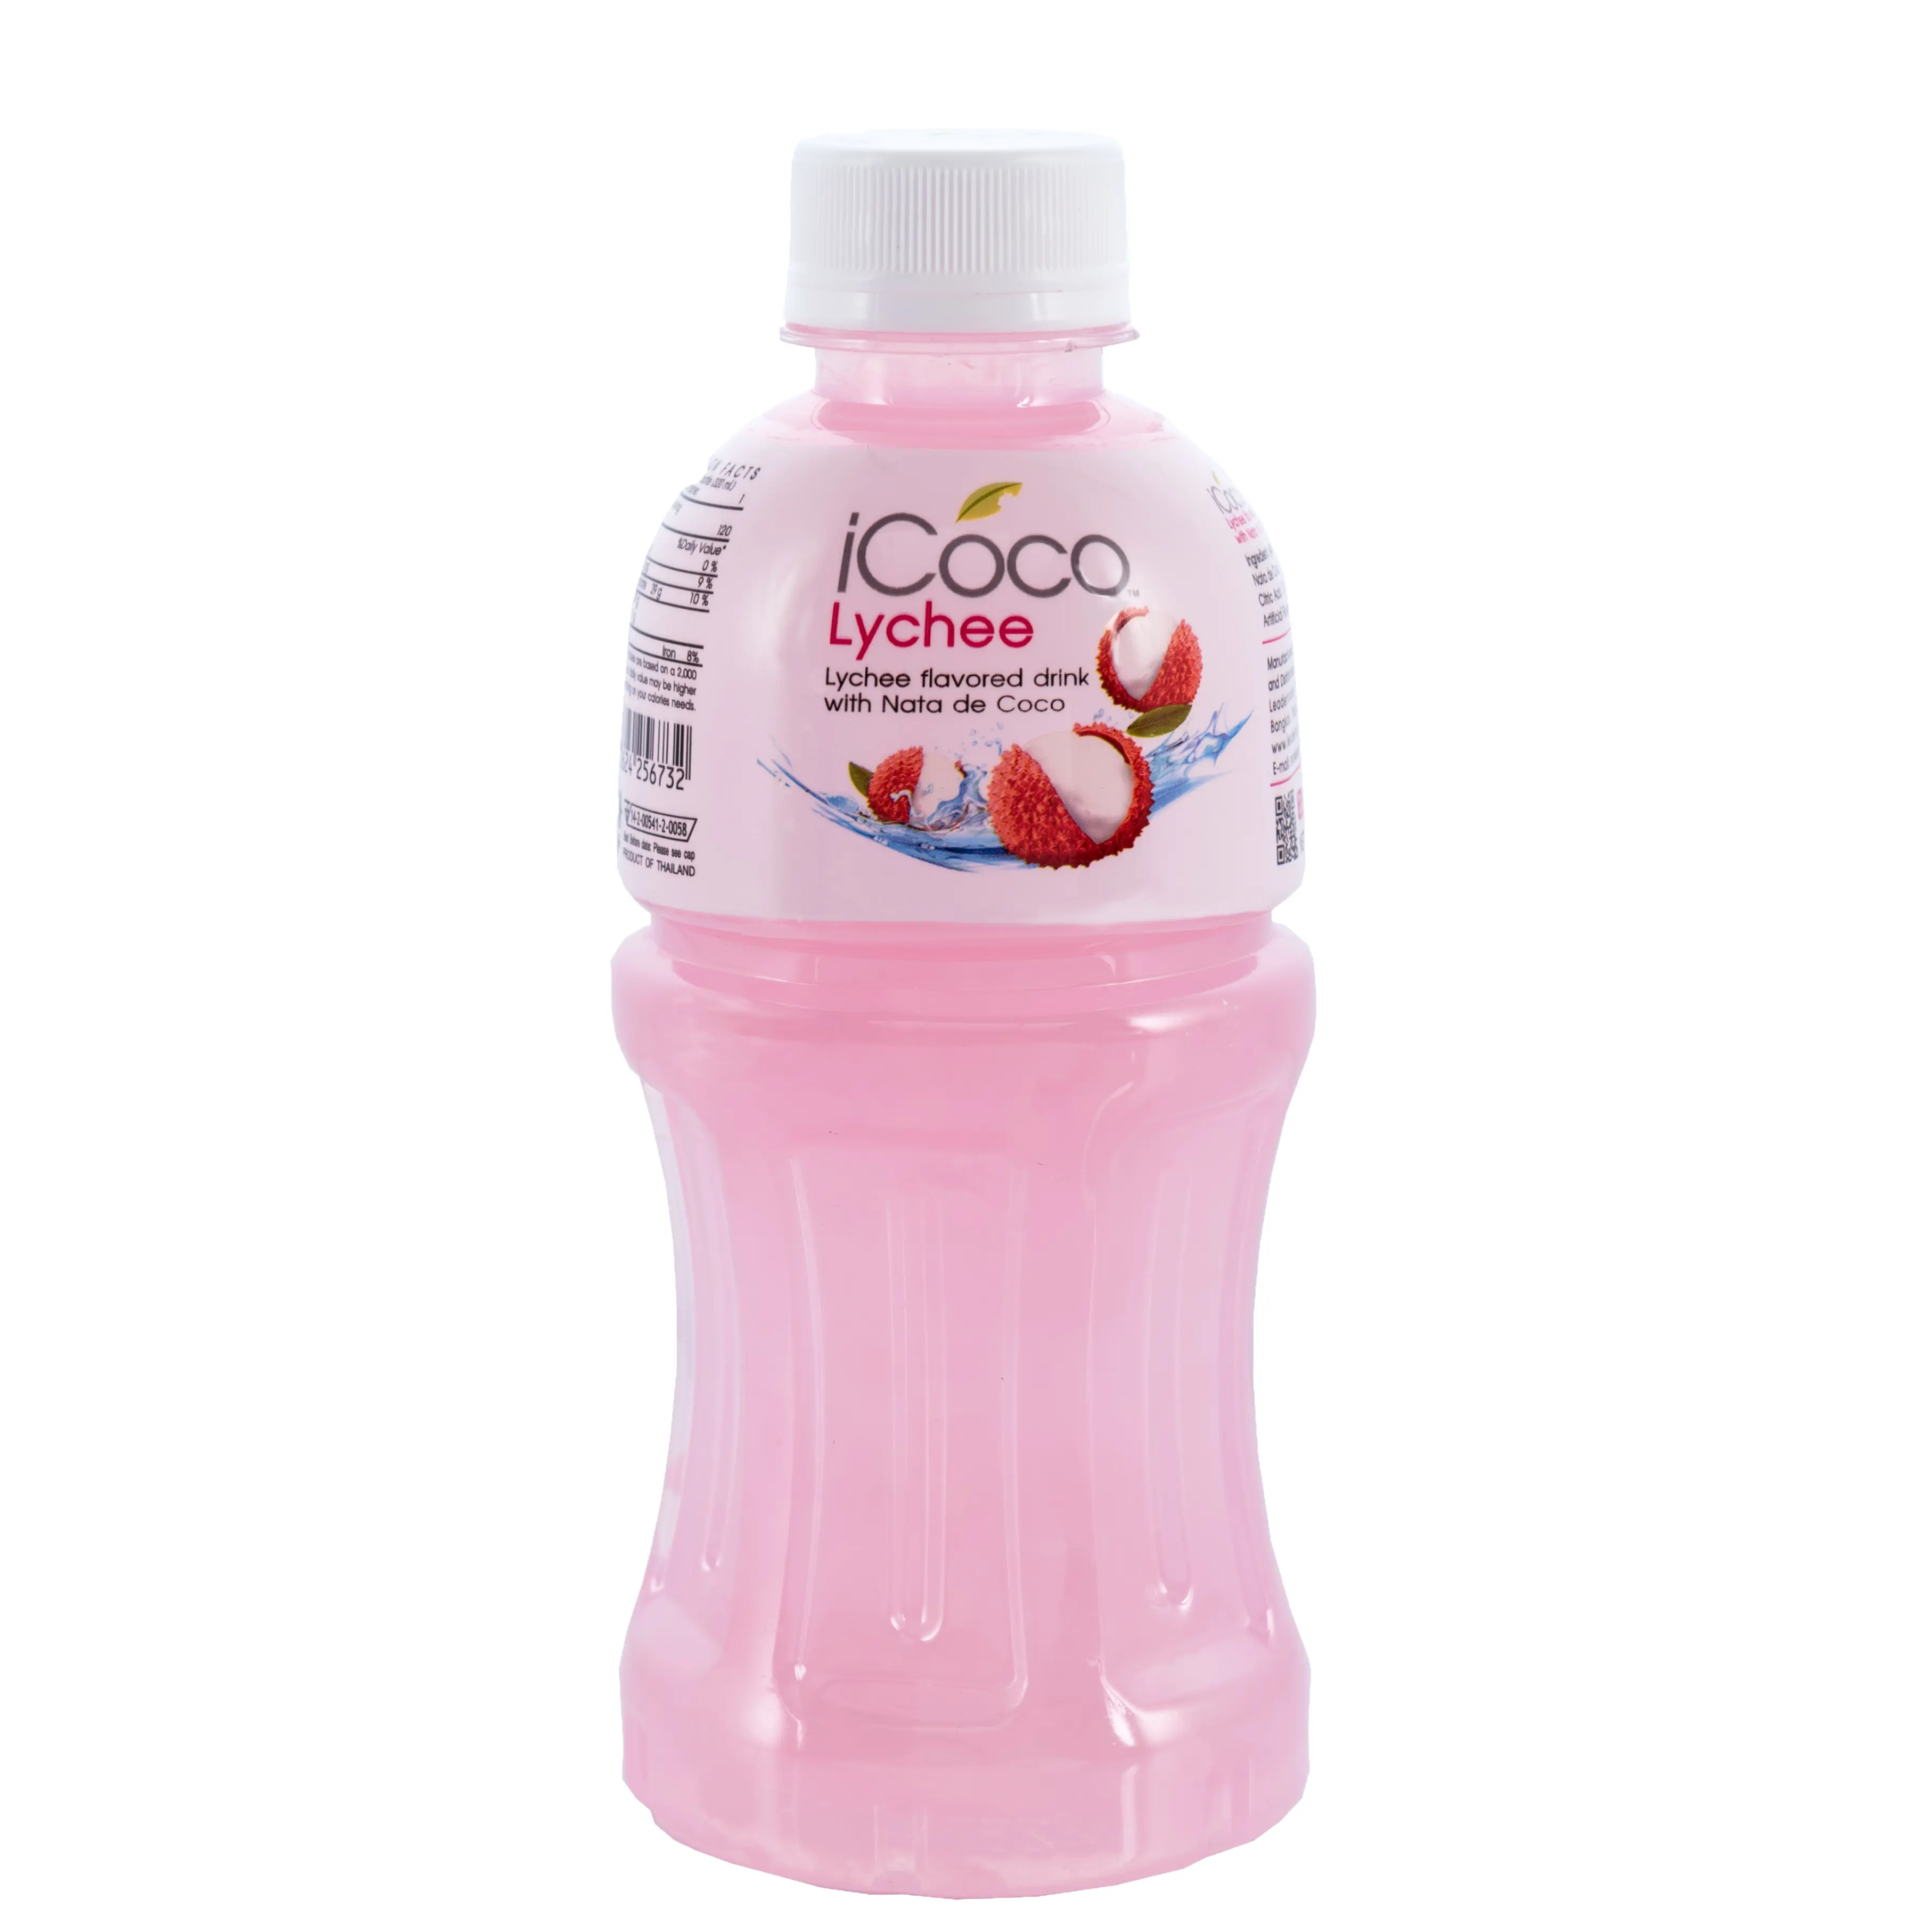 Высококачественный 25% фруктовый сок с ароматом личи Nata De Coco, бренд iCoco, экспорт из Таиланда